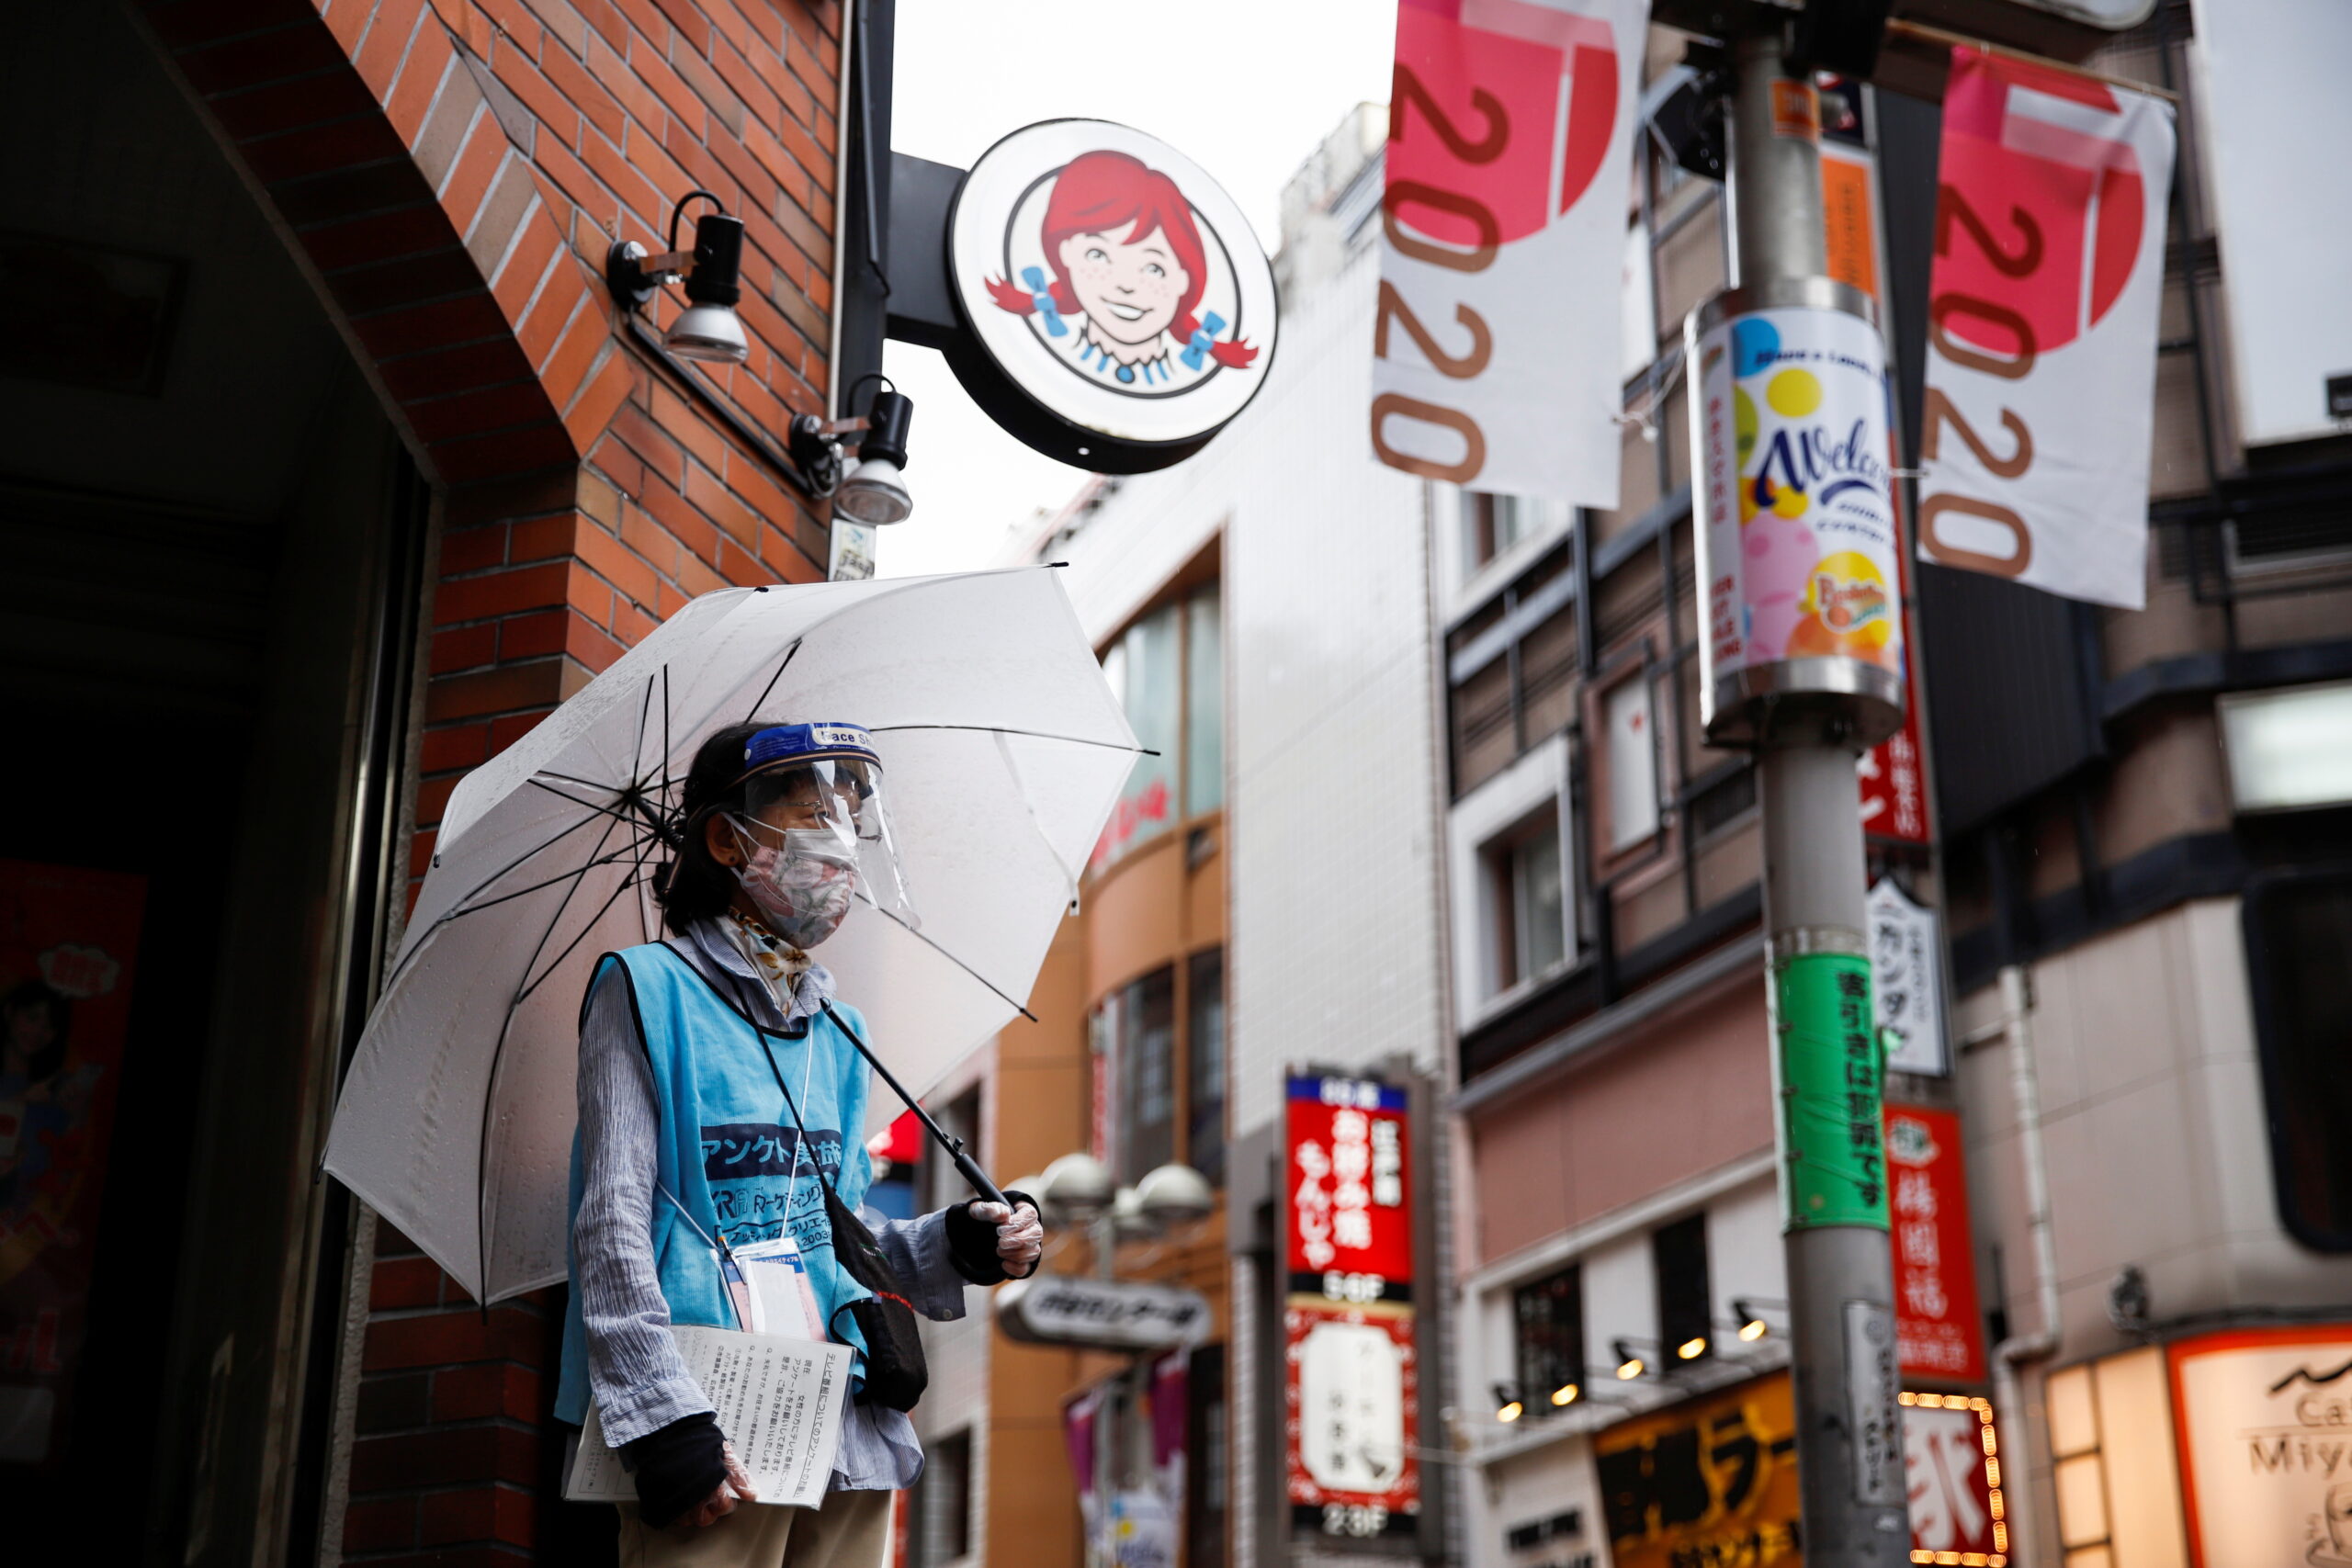 ญี่ปุ่น จ่อยกเลิกประกาศภาวะฉุกเฉิน หลังยอดผู้ติดเชื้อโควิดลดลง – ต่างประเทศ